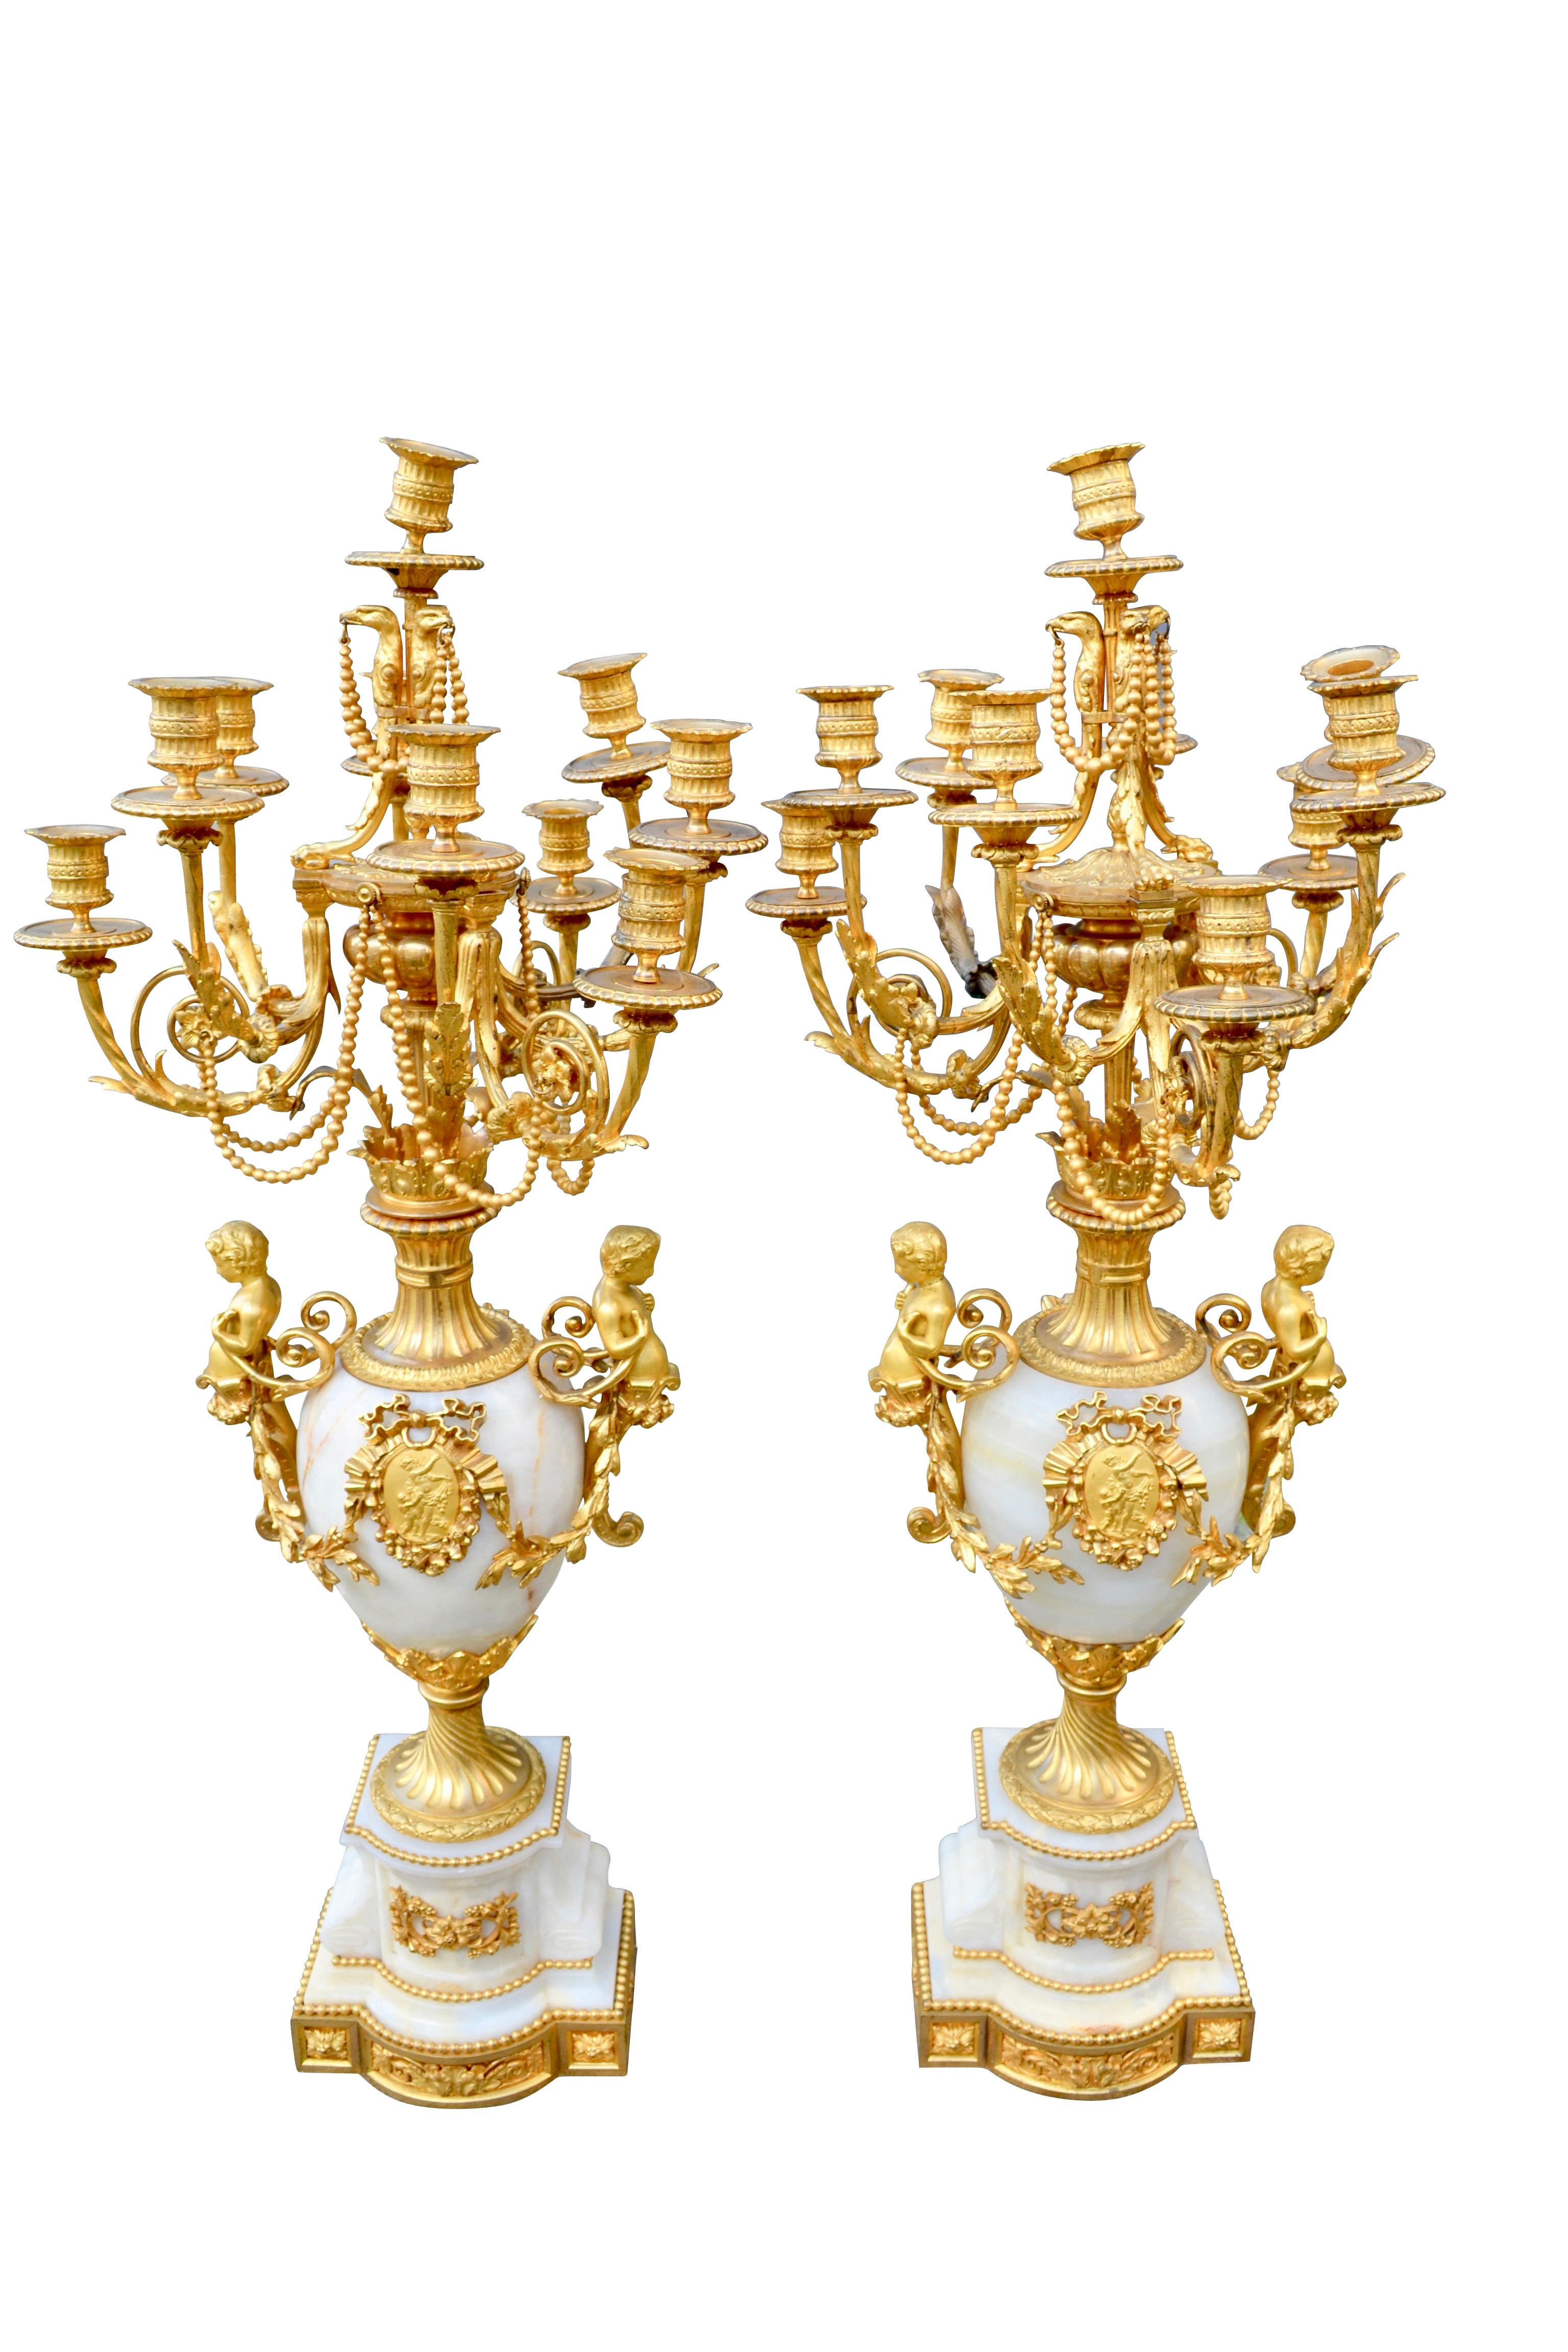 Dieses prächtige Leuchterpaar ist von höchster Qualität und besteht aus geschnitztem Onyx und fein gegossener, vergoldeter Bronze. Sie wurden während der Ära Napoleons III. in Frankreich hergestellt und sind außergewöhnliche Beispiele für die